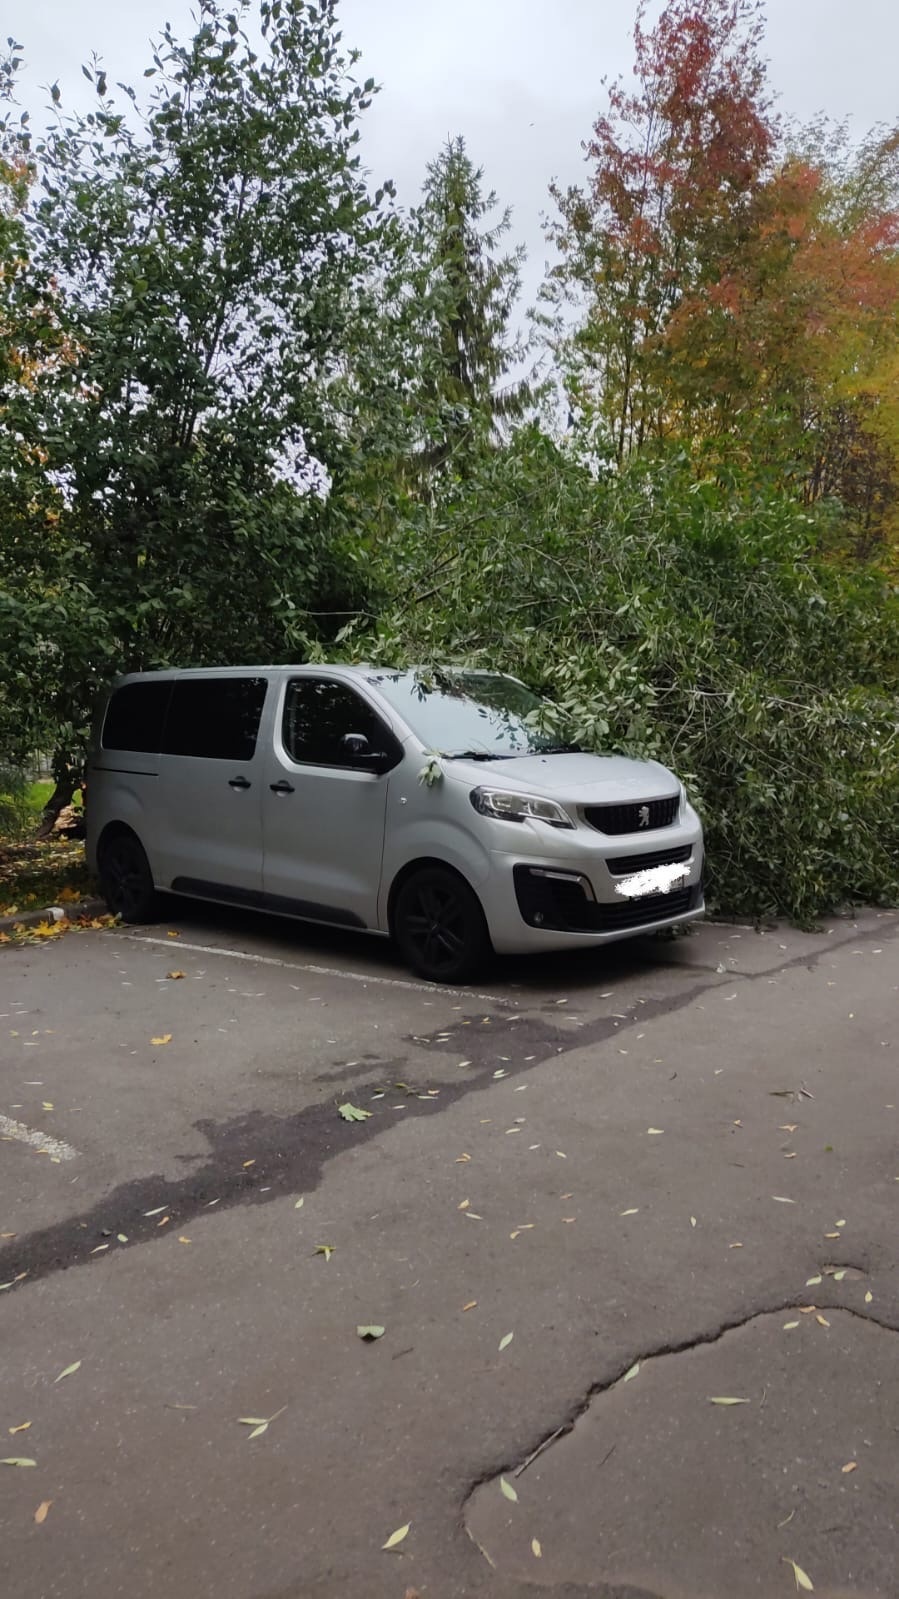 МЧС подводит итоги ветреного дня в Петербурге. Среди жертв деревья, машины и дорожные знаки